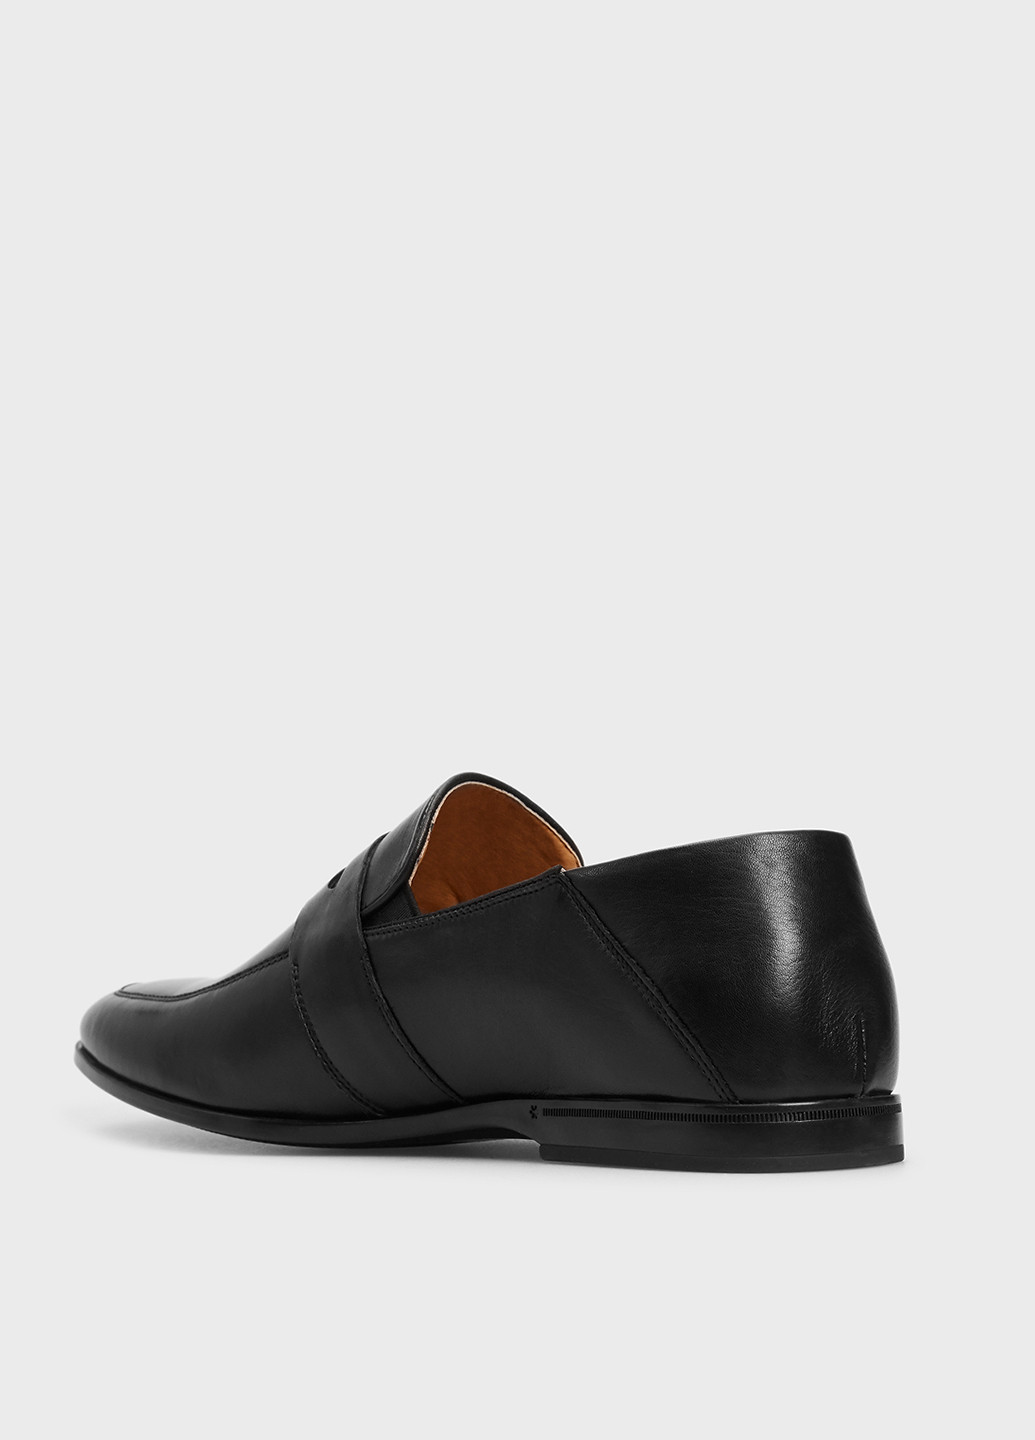 Черные классические туфли PRPY без шнурков